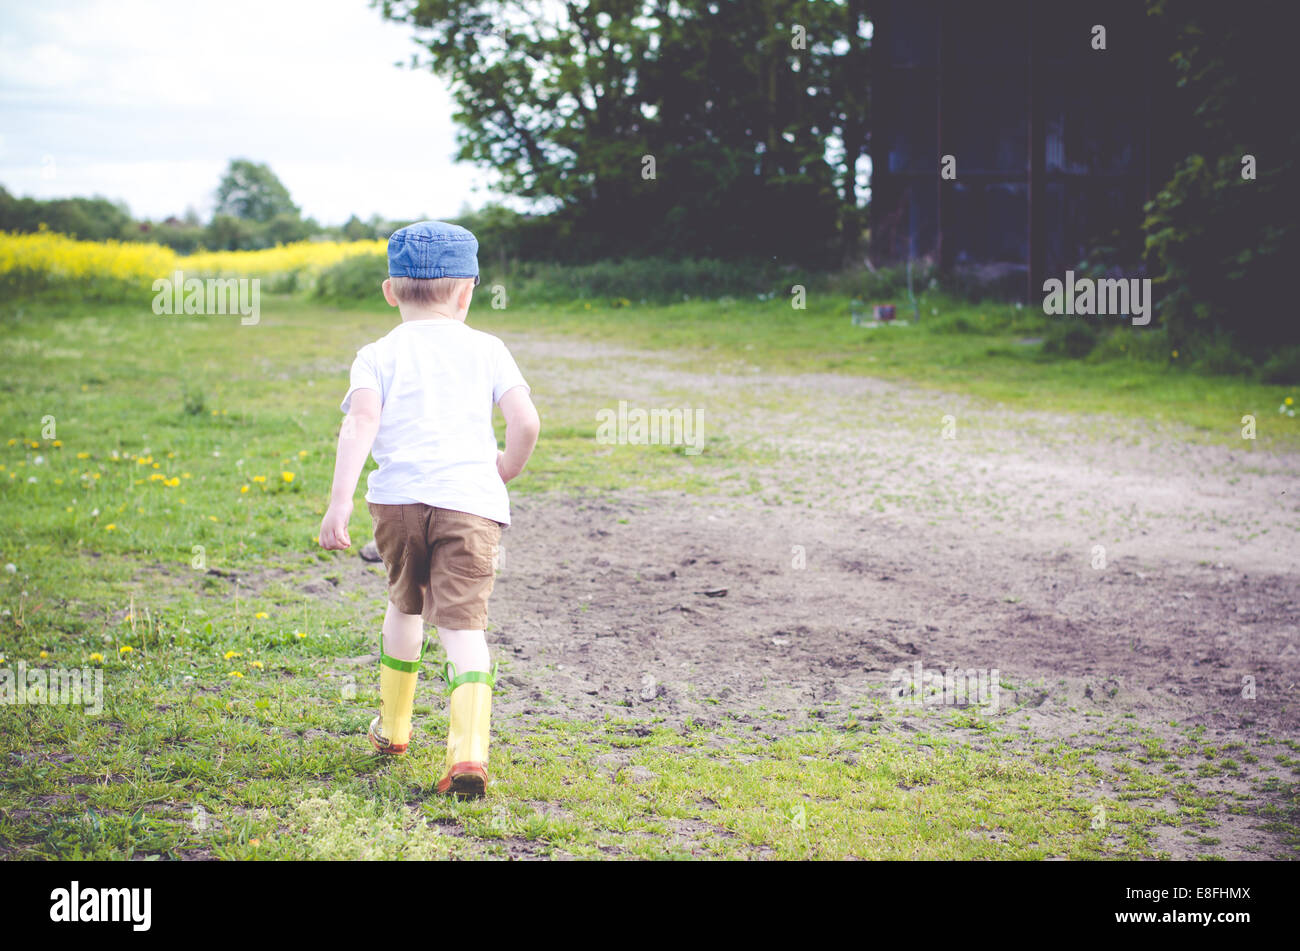 Boy running in rural landscape Banque D'Images